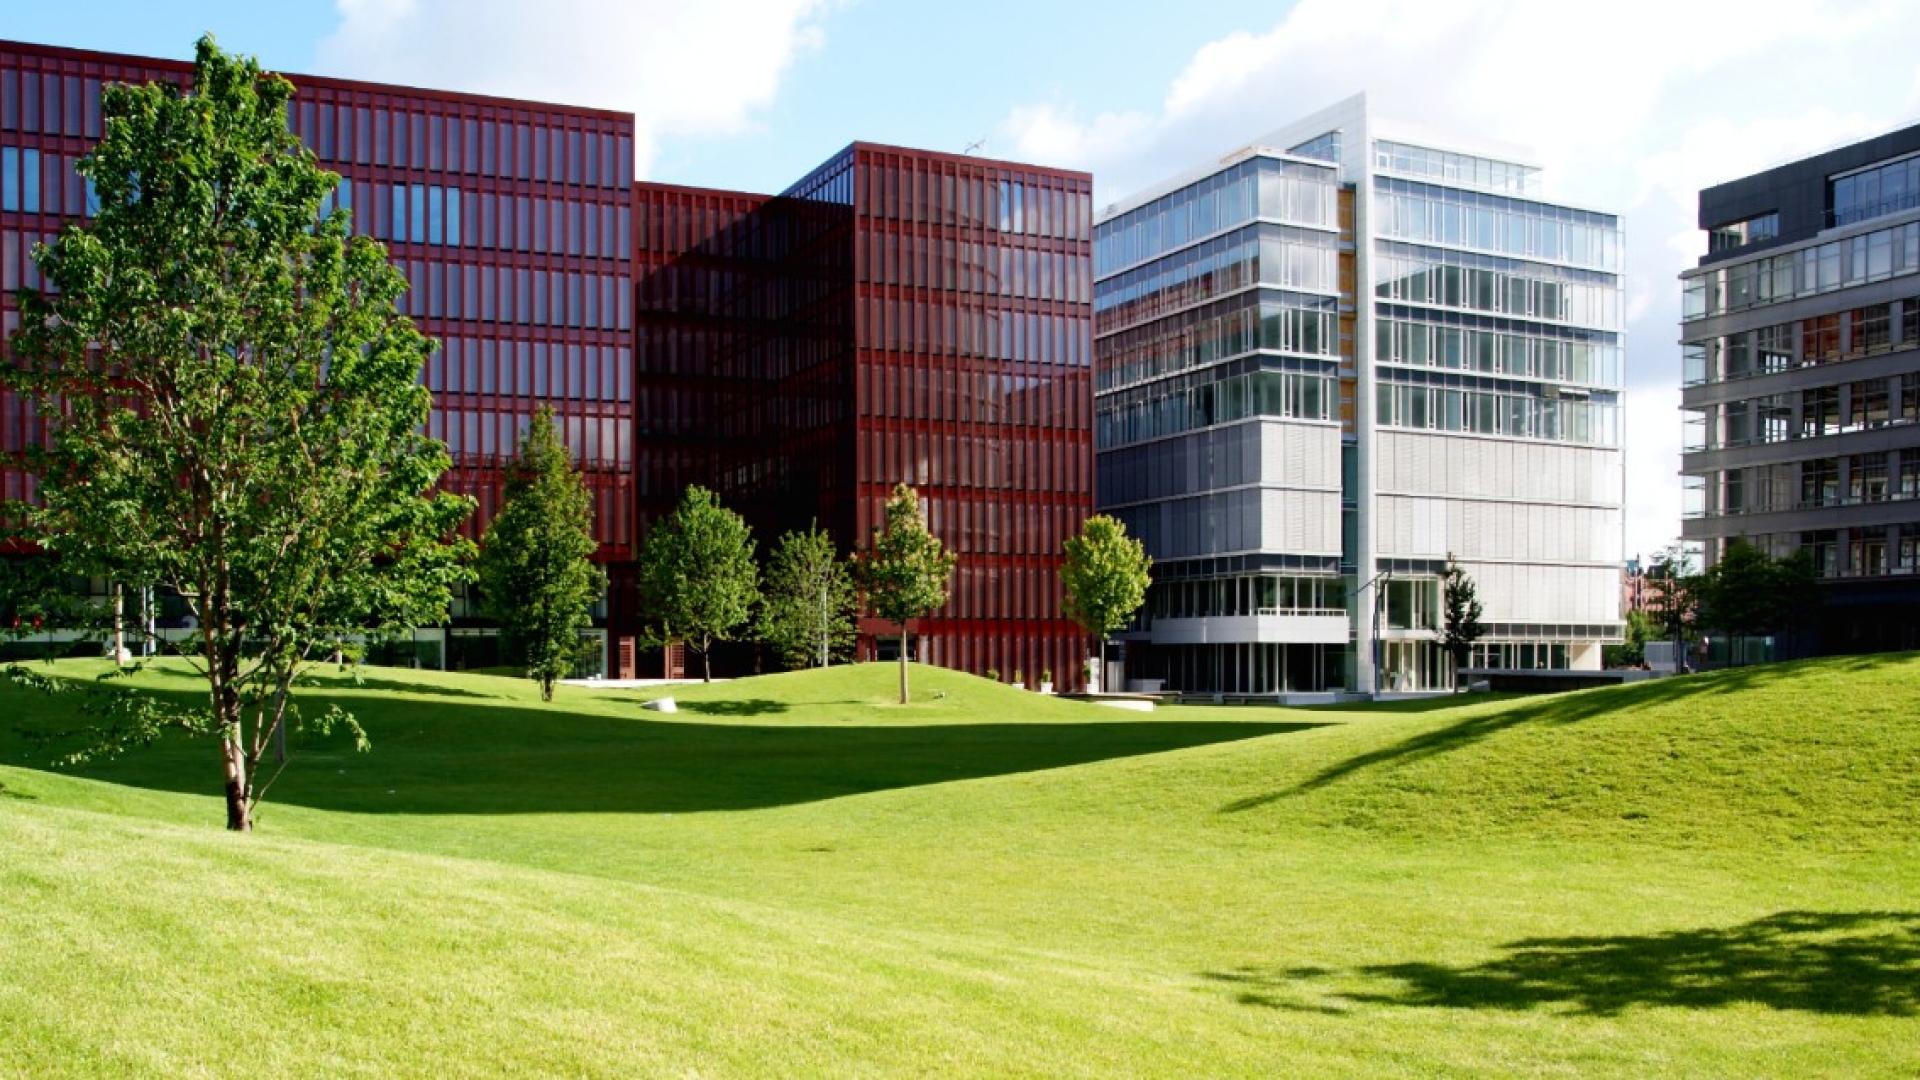 Mehre Bürogebäude sind hinter eine grünen Wiese zu sehen.